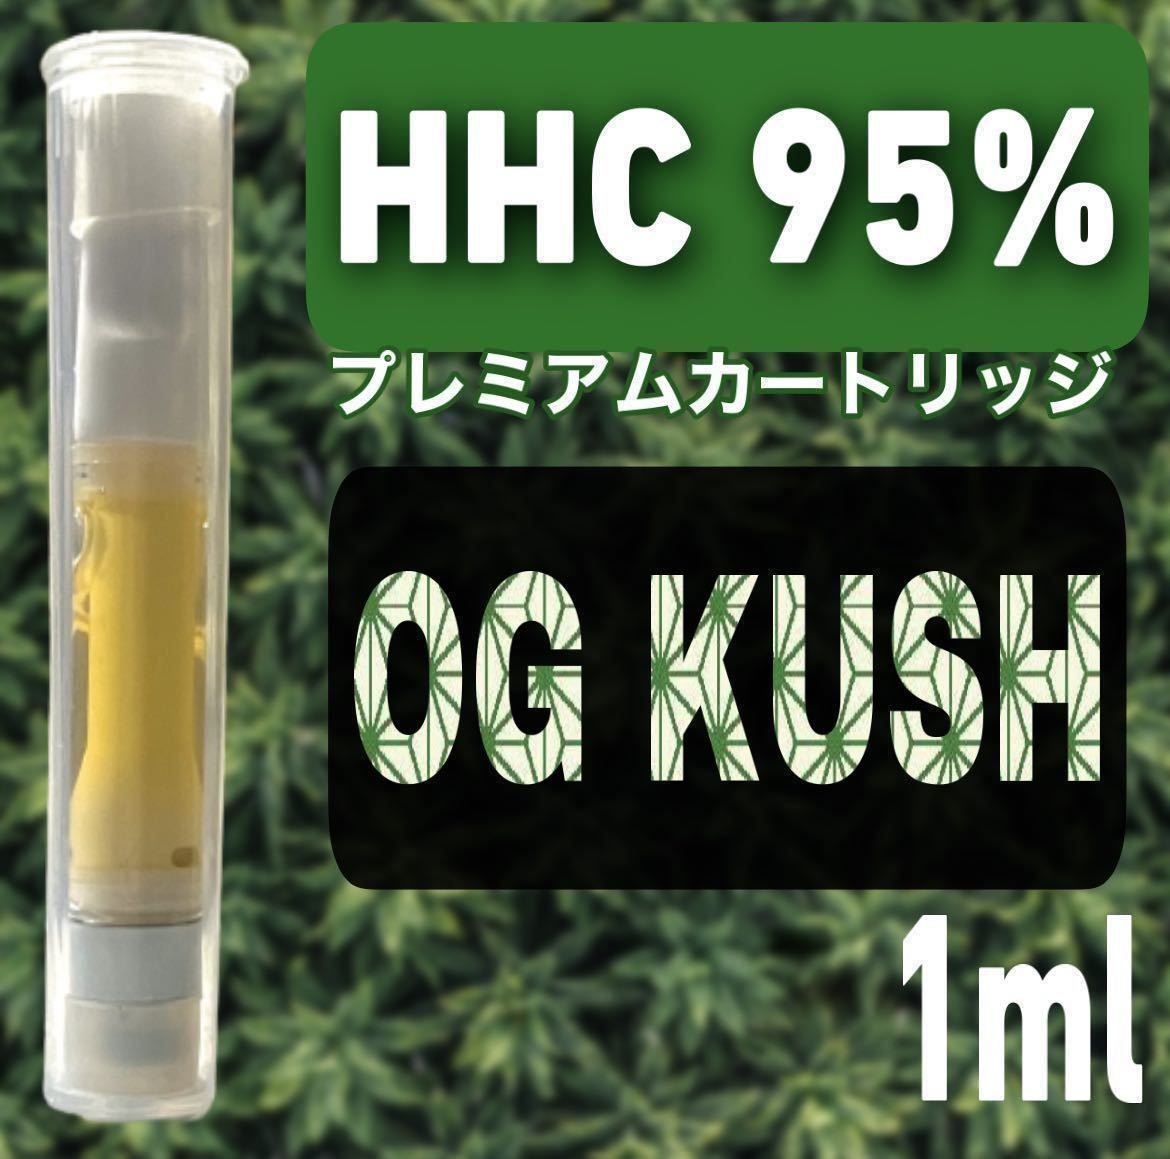 高級感 CRD liquid 95% OG KUSH 1.0ml 2本セット gokuburger.fr